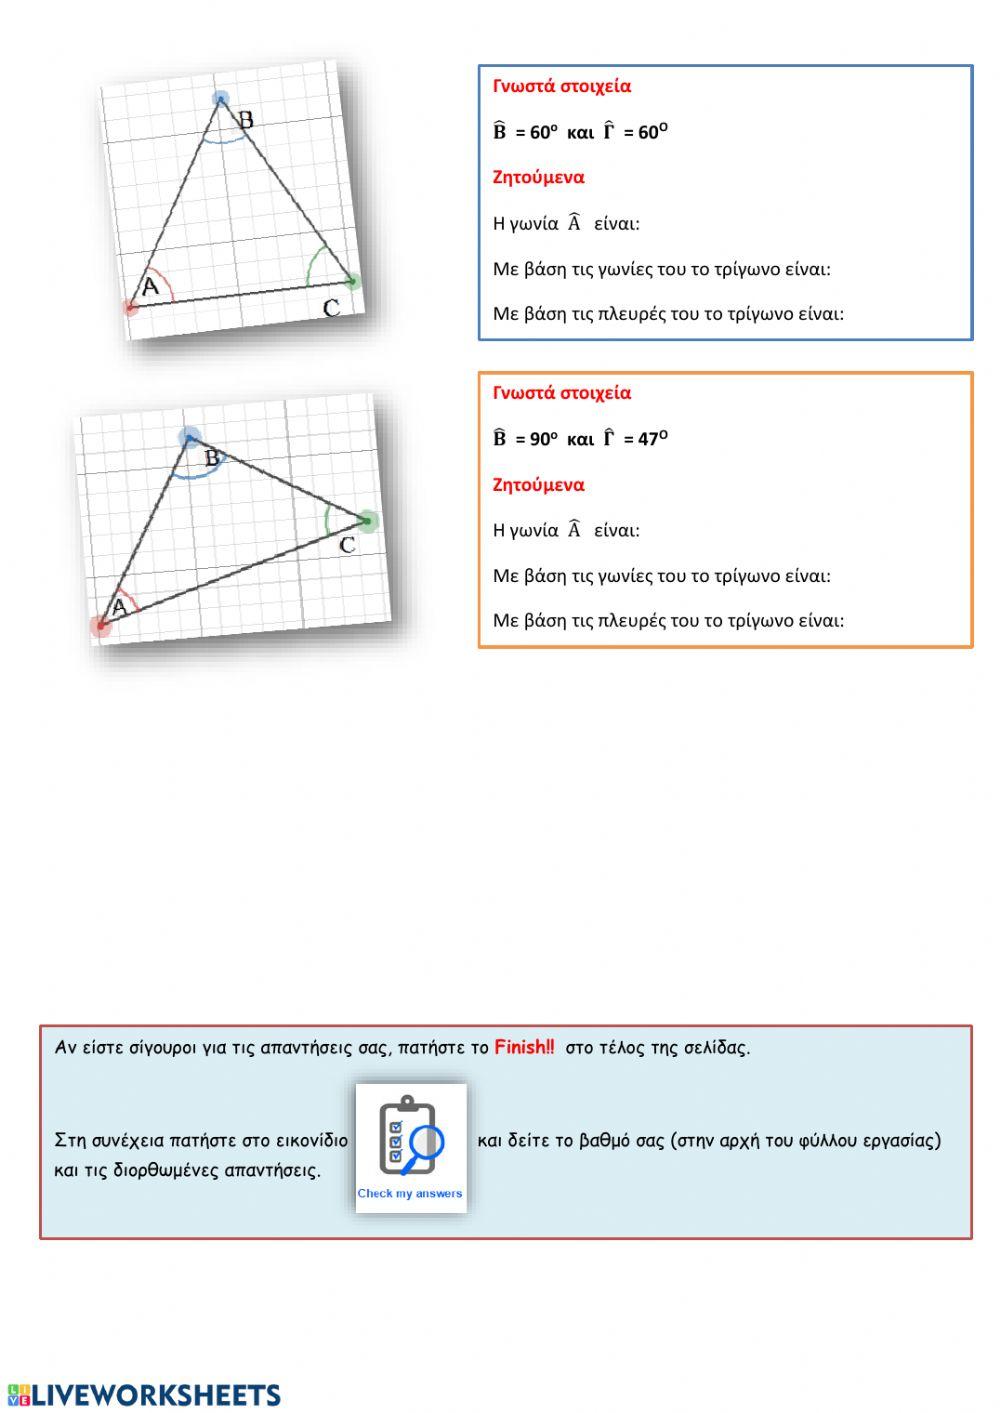 Διάκριση τριγώνων-Υπολογισμός γωνιών